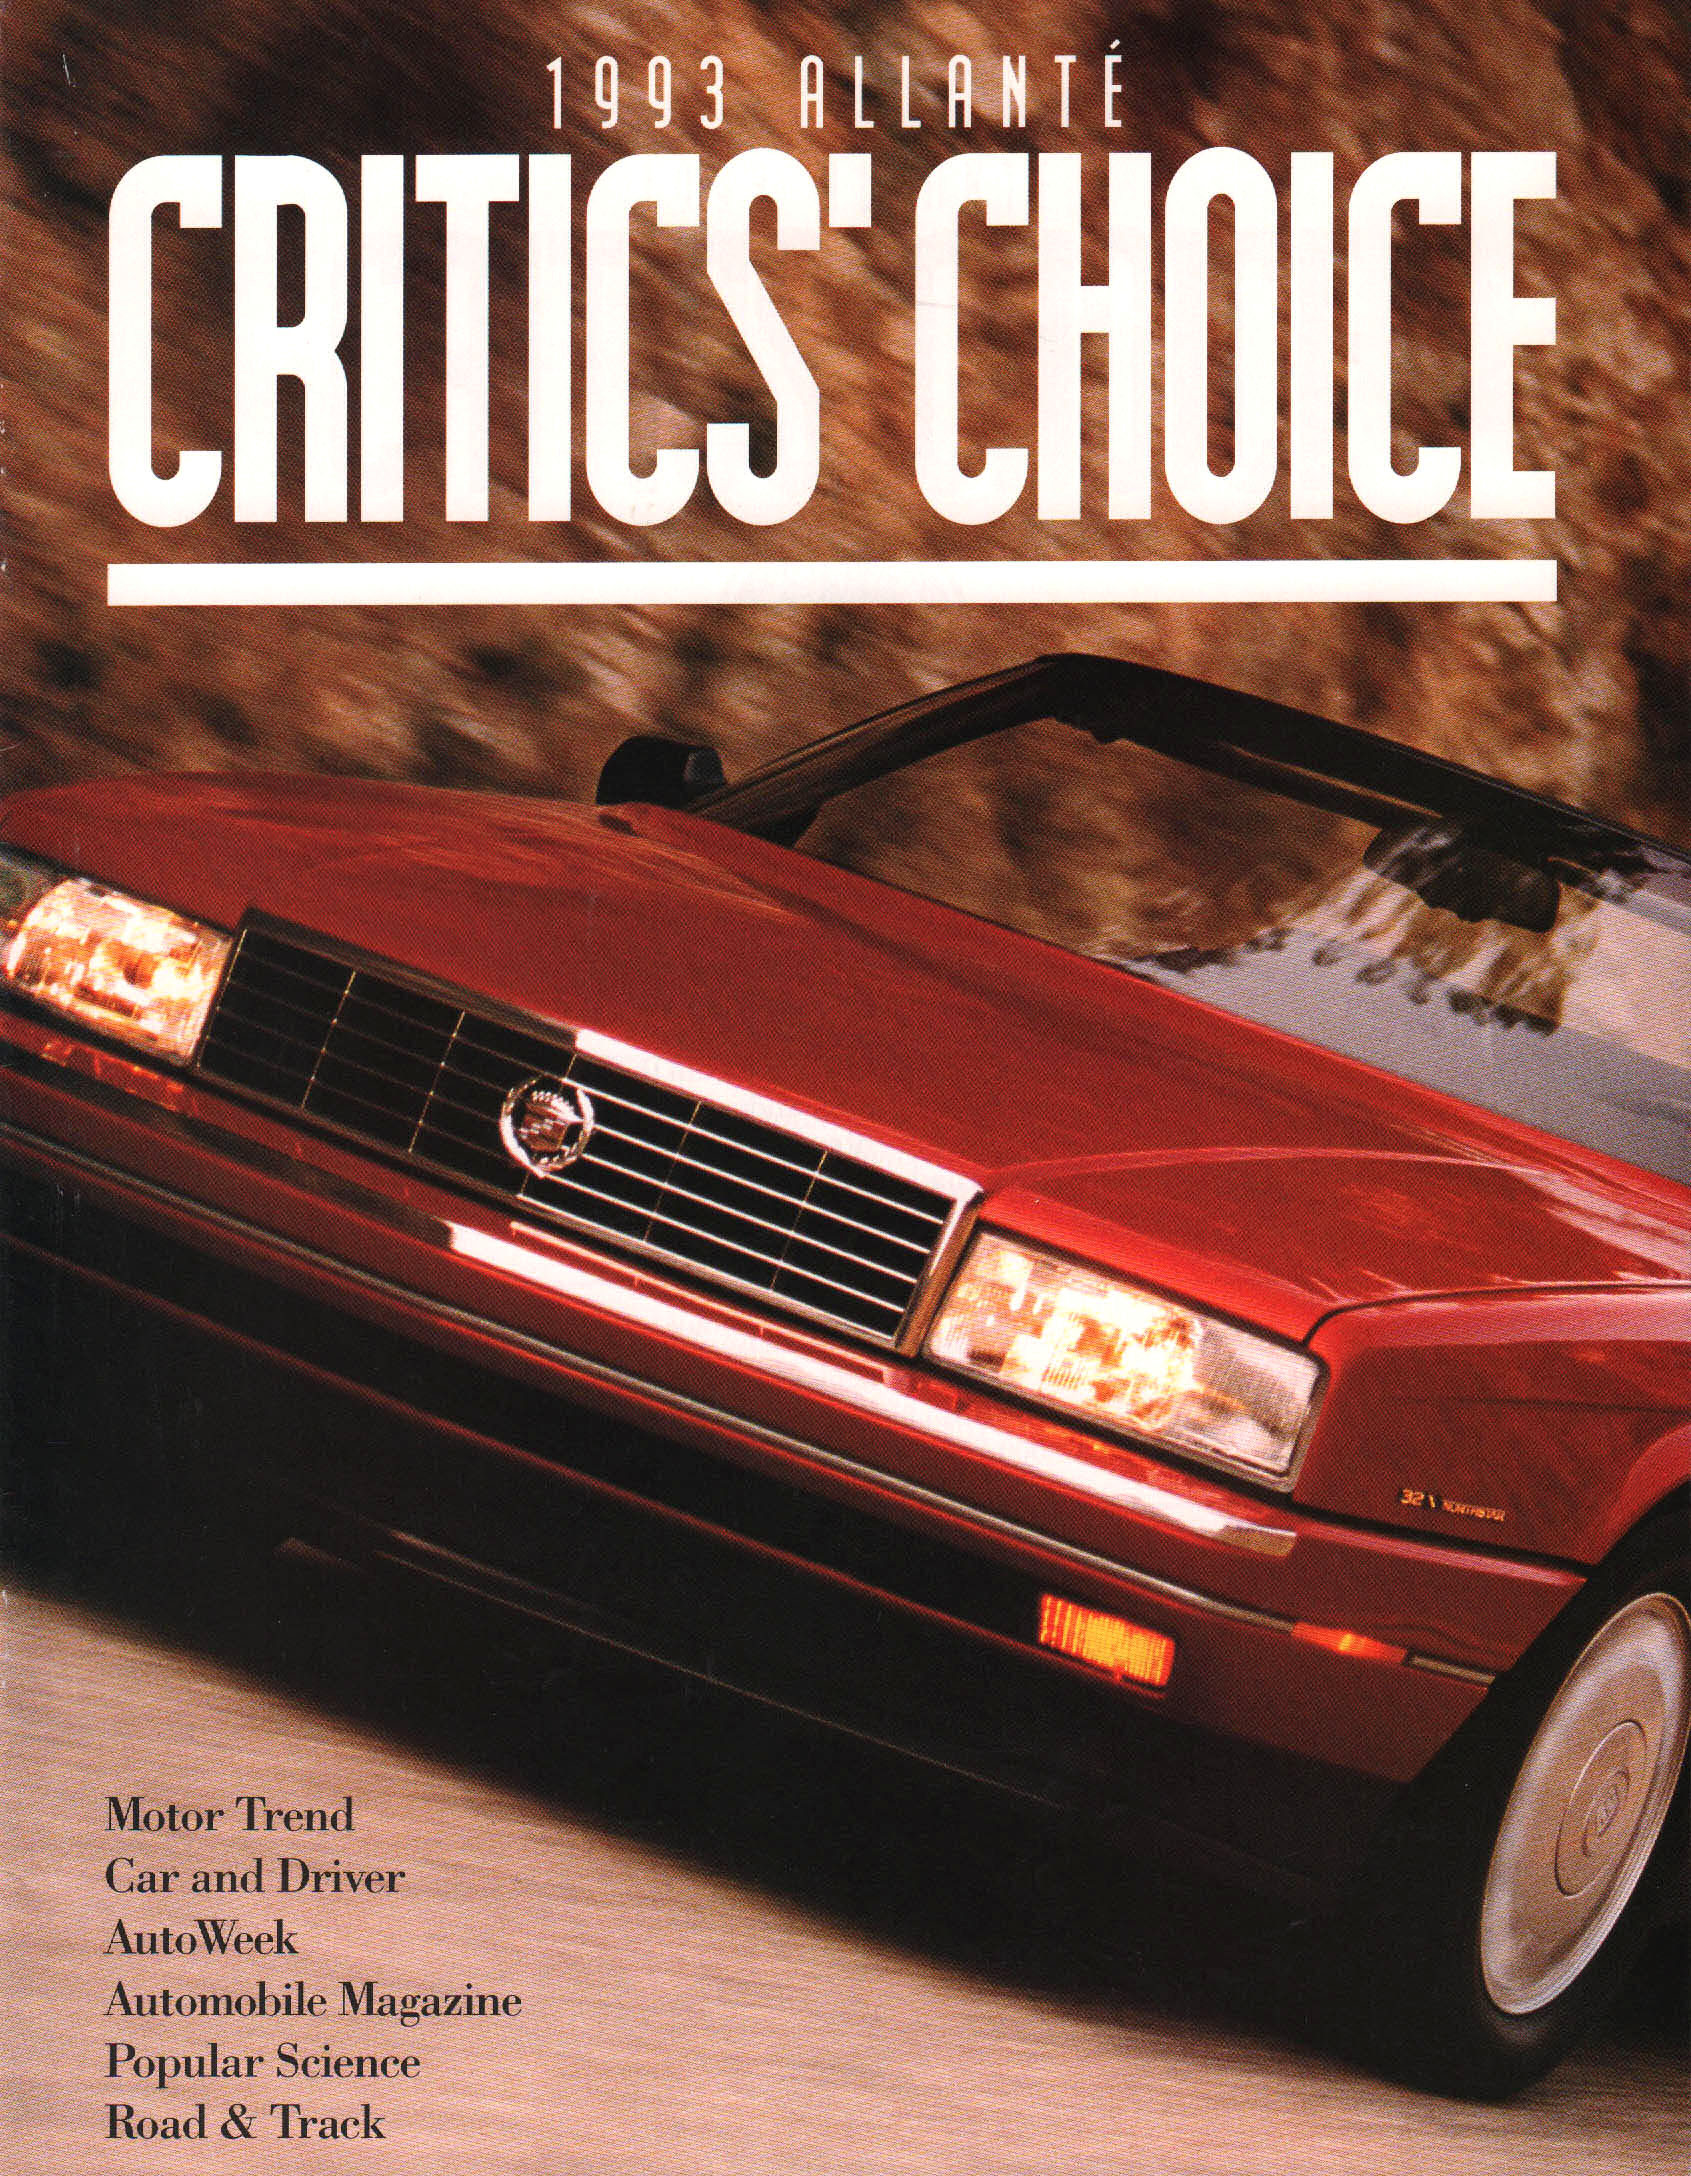 1993_Cadillac_Allante_Critics_Choice-01